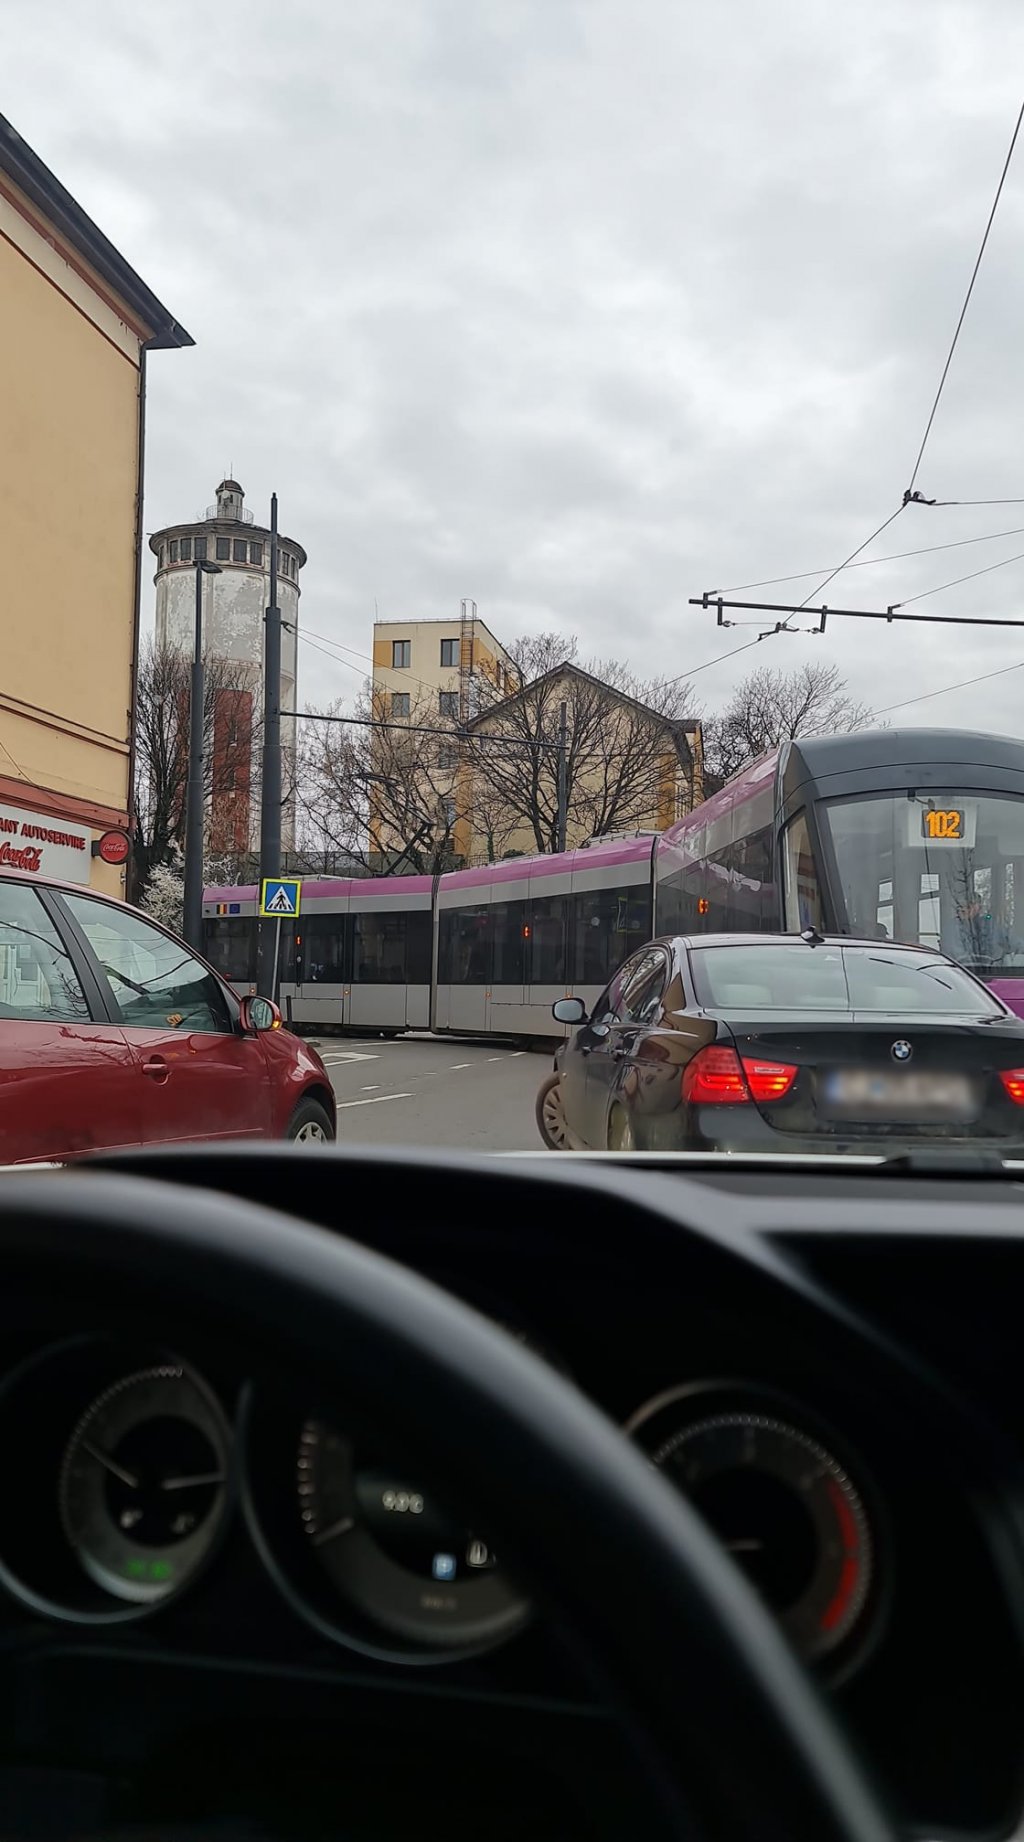 Străzile închise la Cluj-Napoca au blocat traficul în centru şi au întins nervii celor captivi în maşini, tramvaie şi autobuze